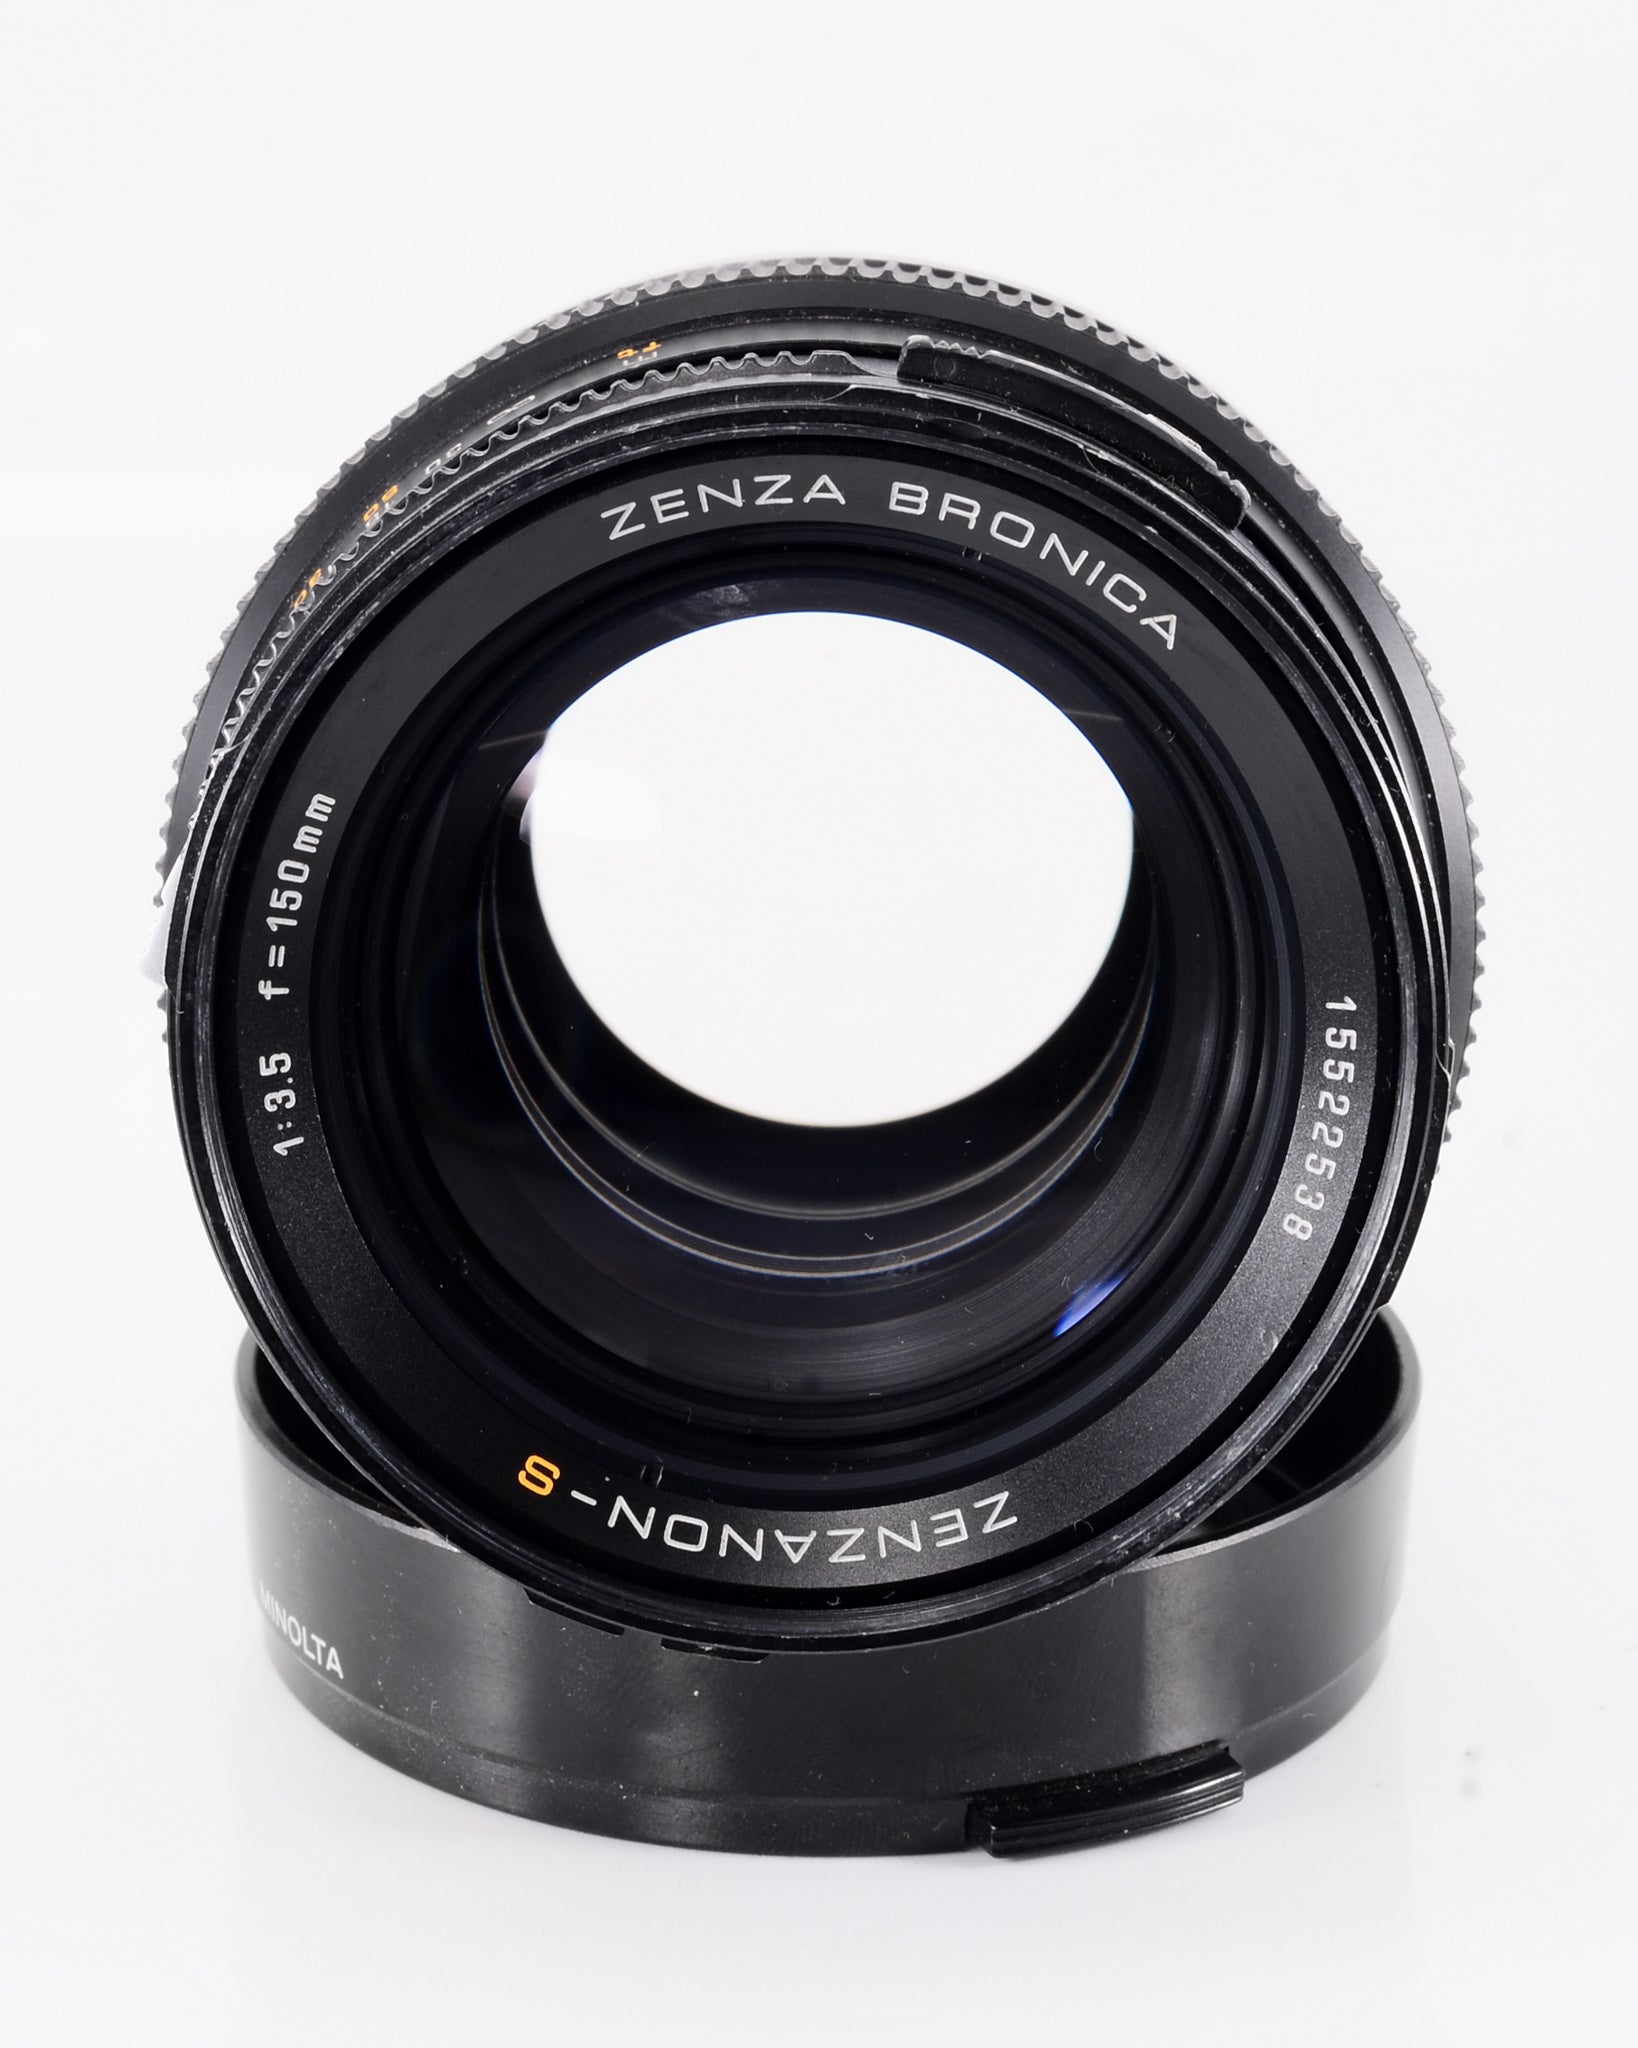 Zenzanon-S 150mm f3.5 Bronica SQ lens - Mori Film Lab